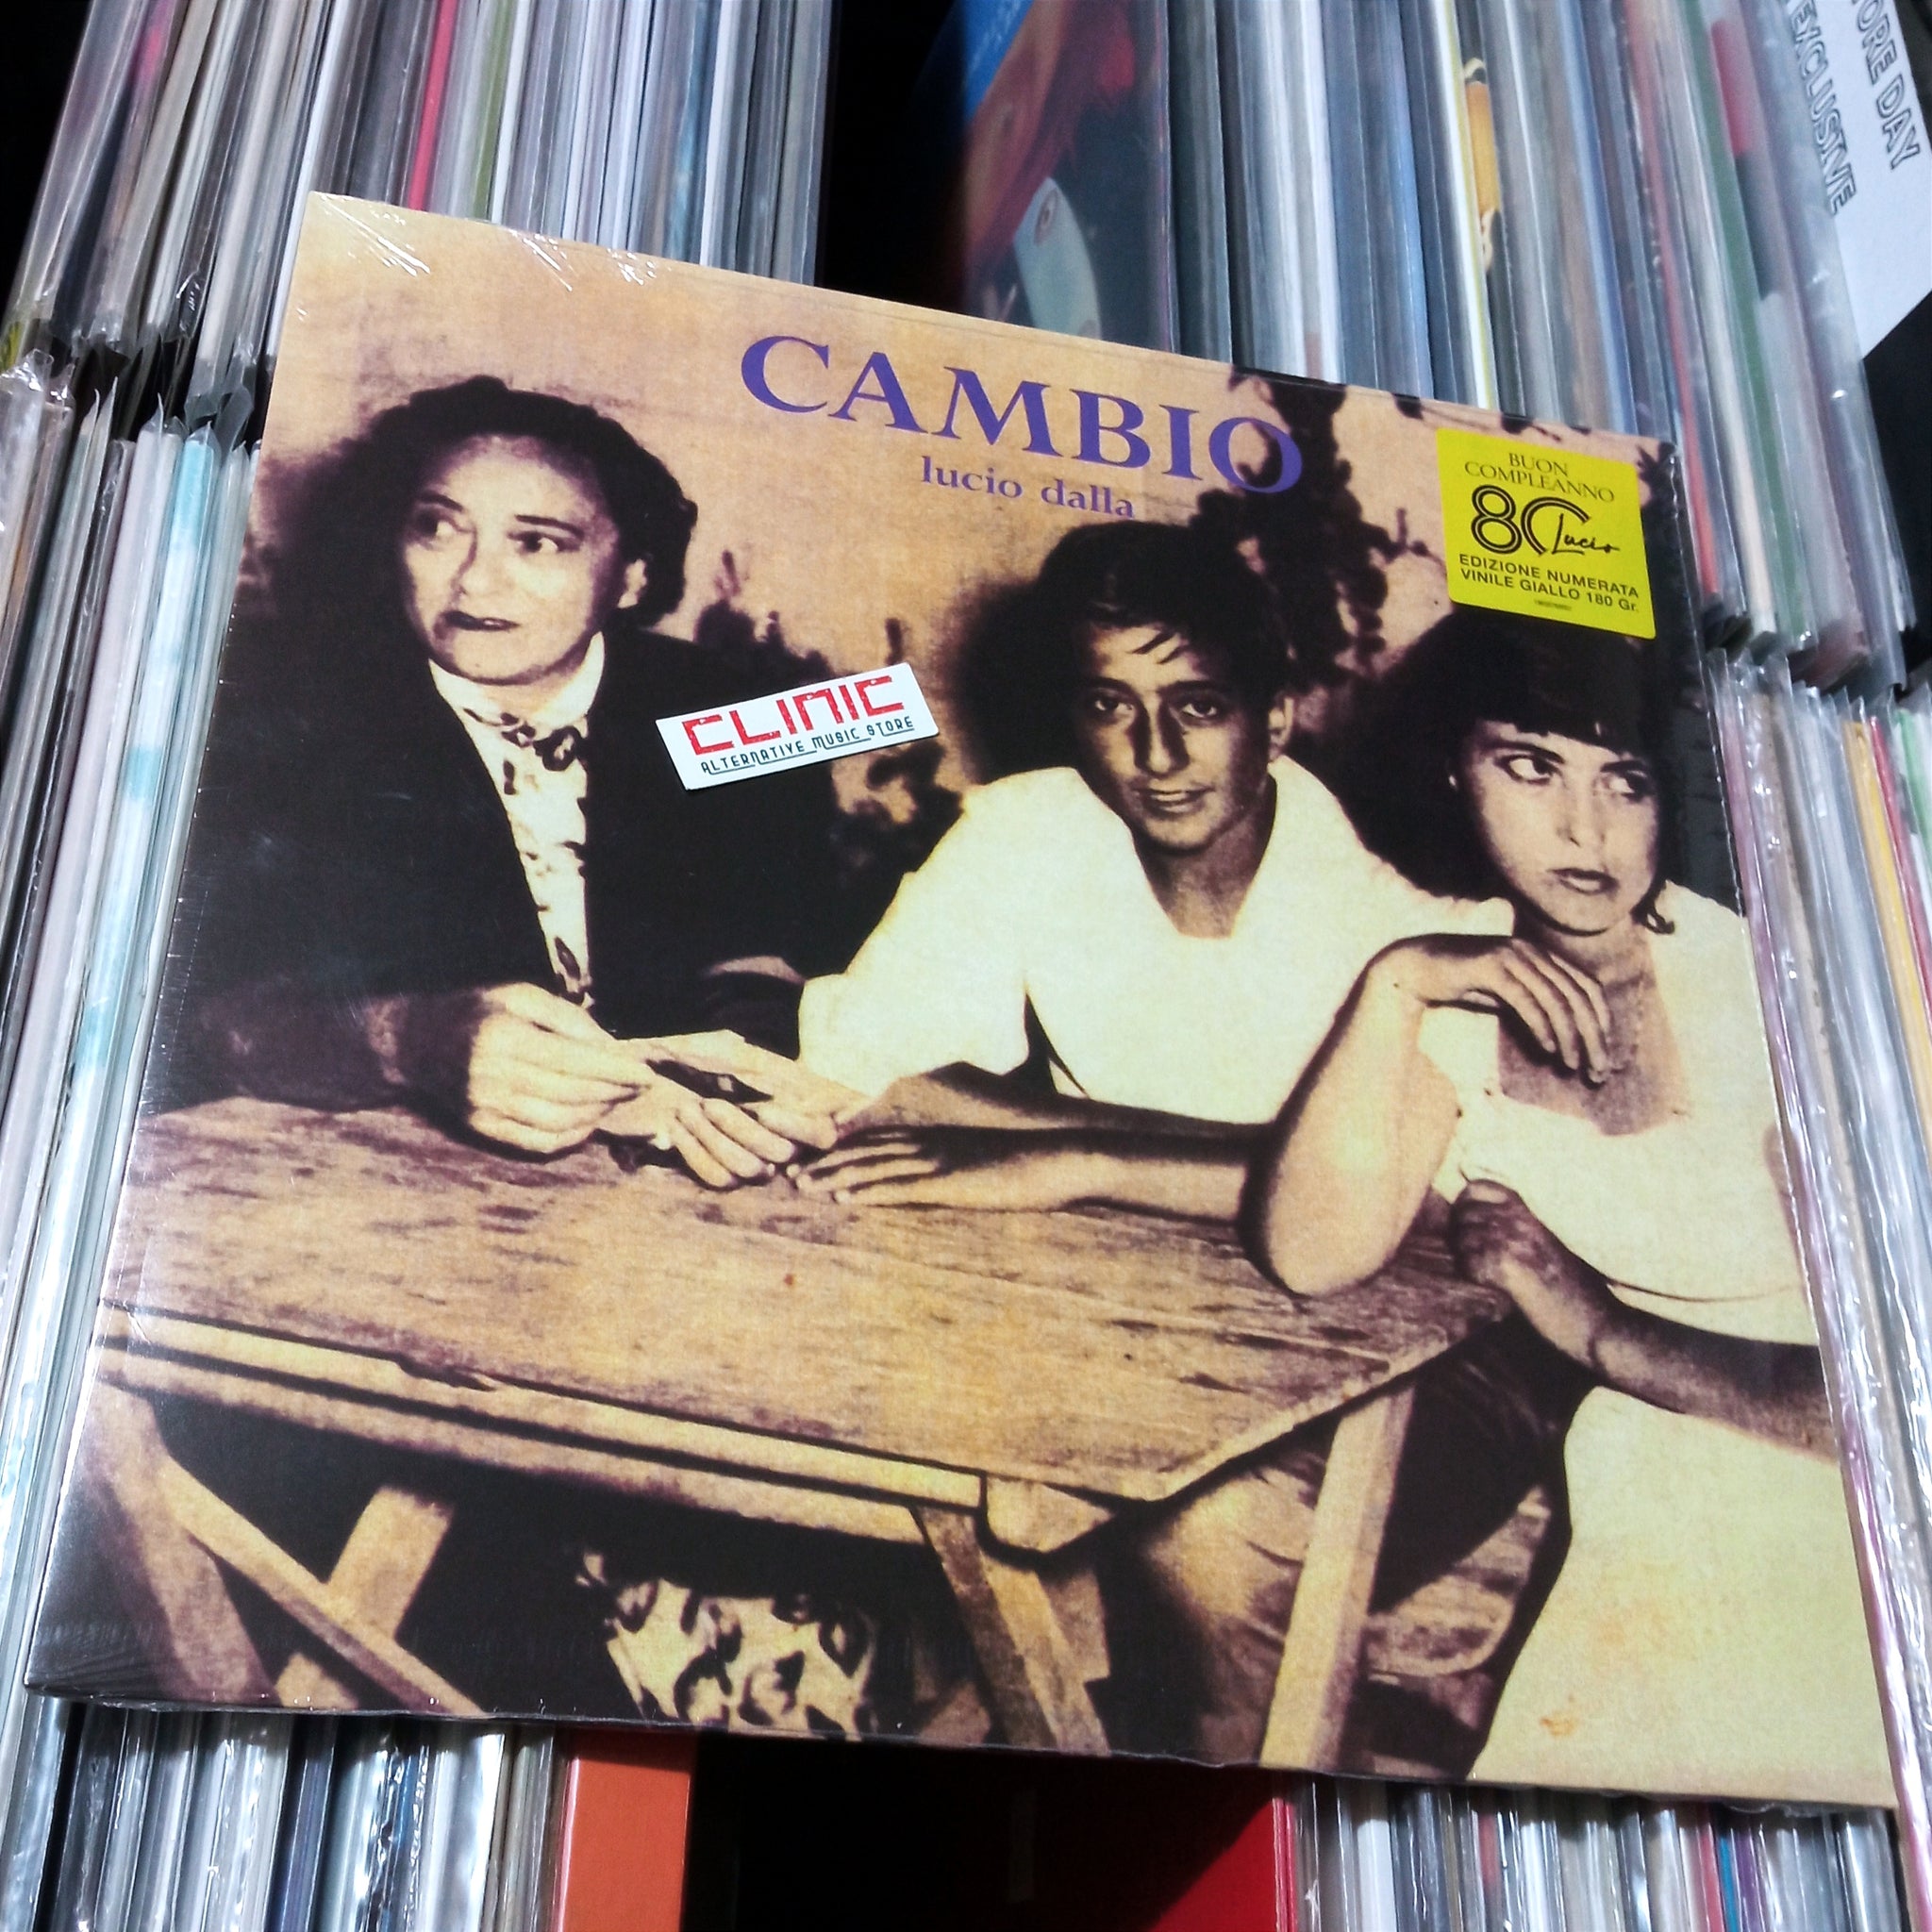 LP - LUCIO DALLA - CAMBIO (Limited Edition)